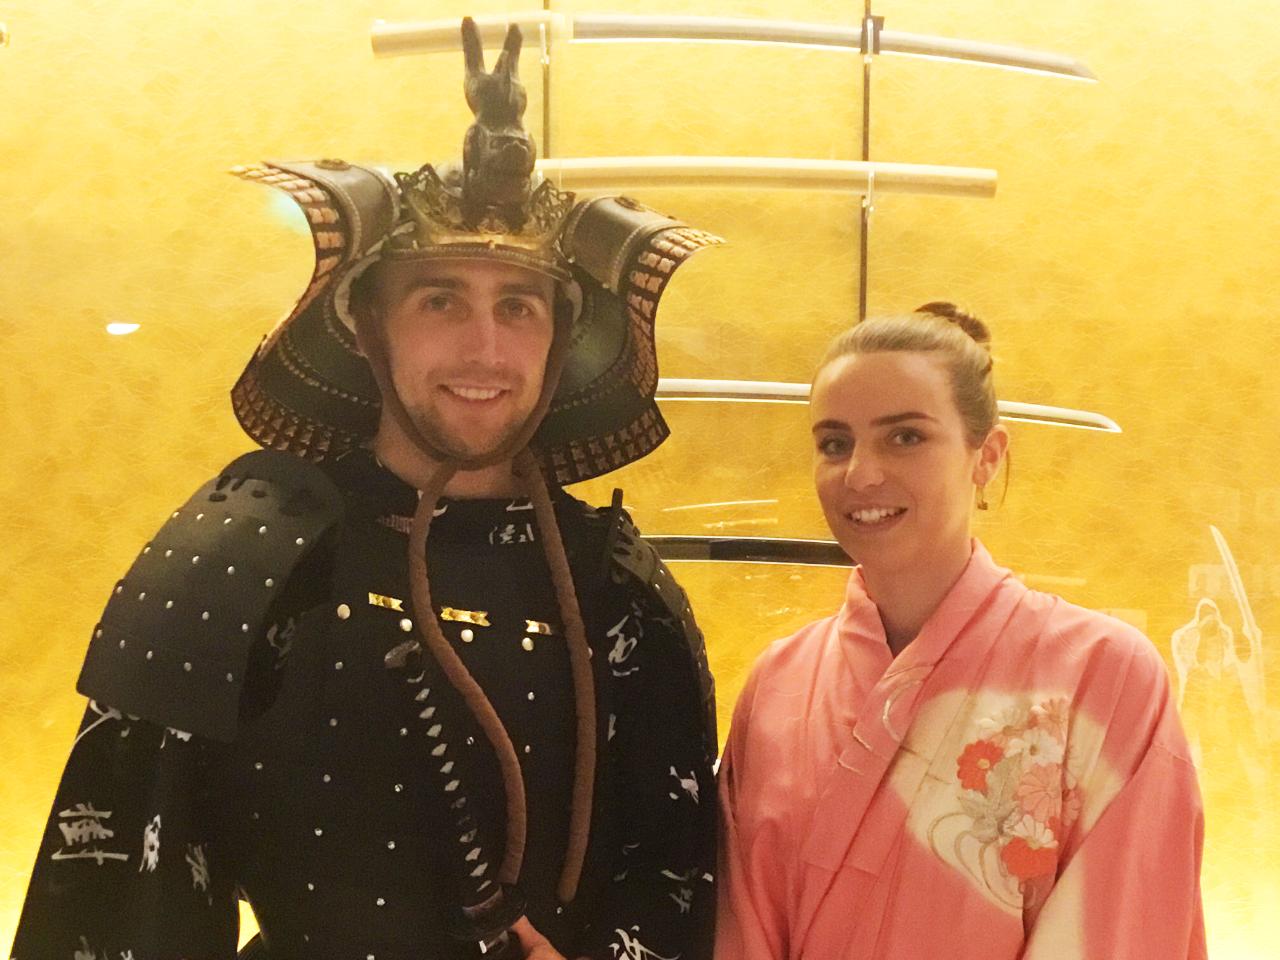 Samurai & Ninja Museum Guided Tour